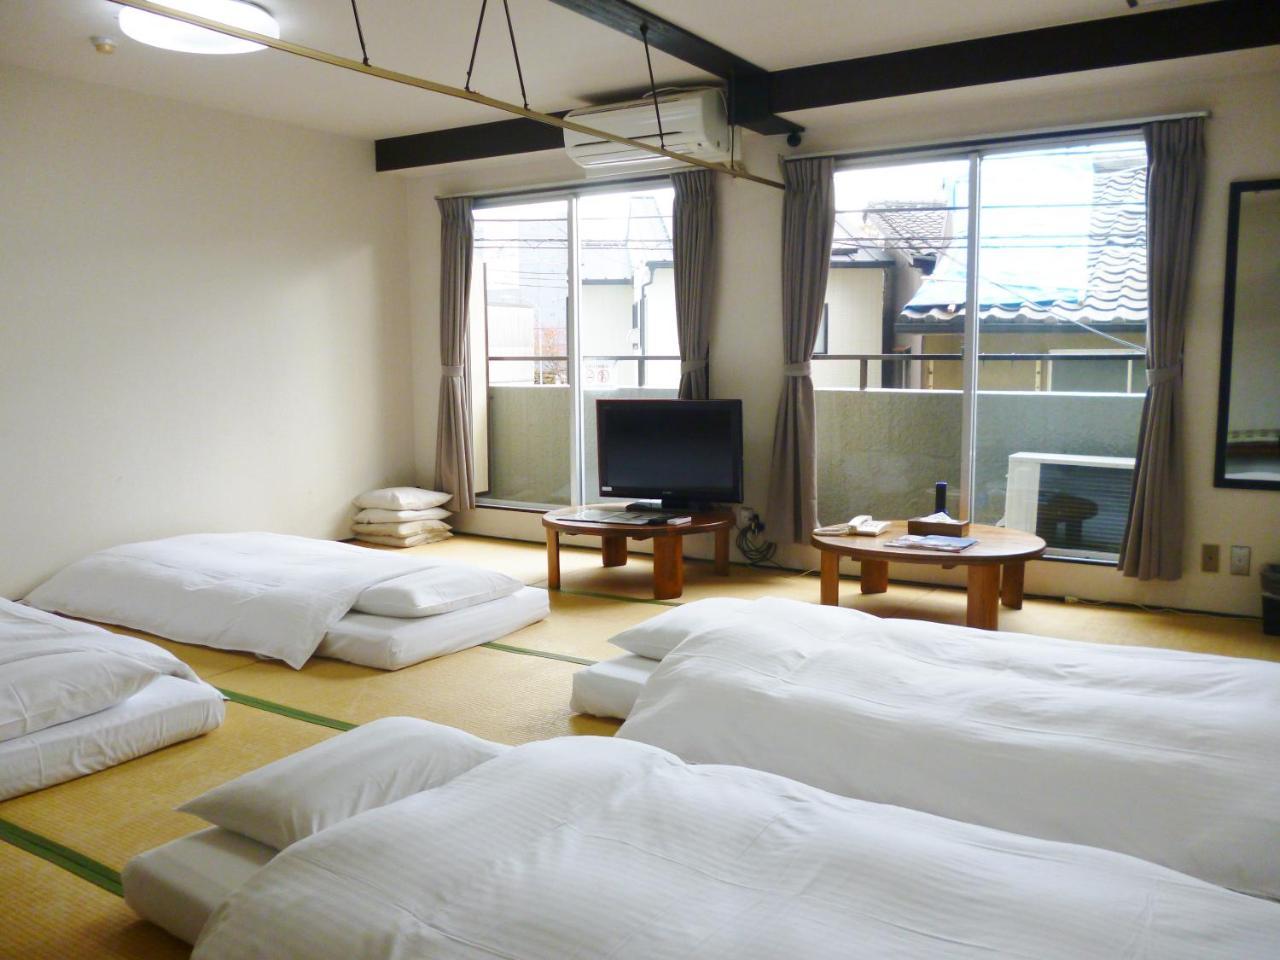 Econo-Inn Kyoto Exterior foto